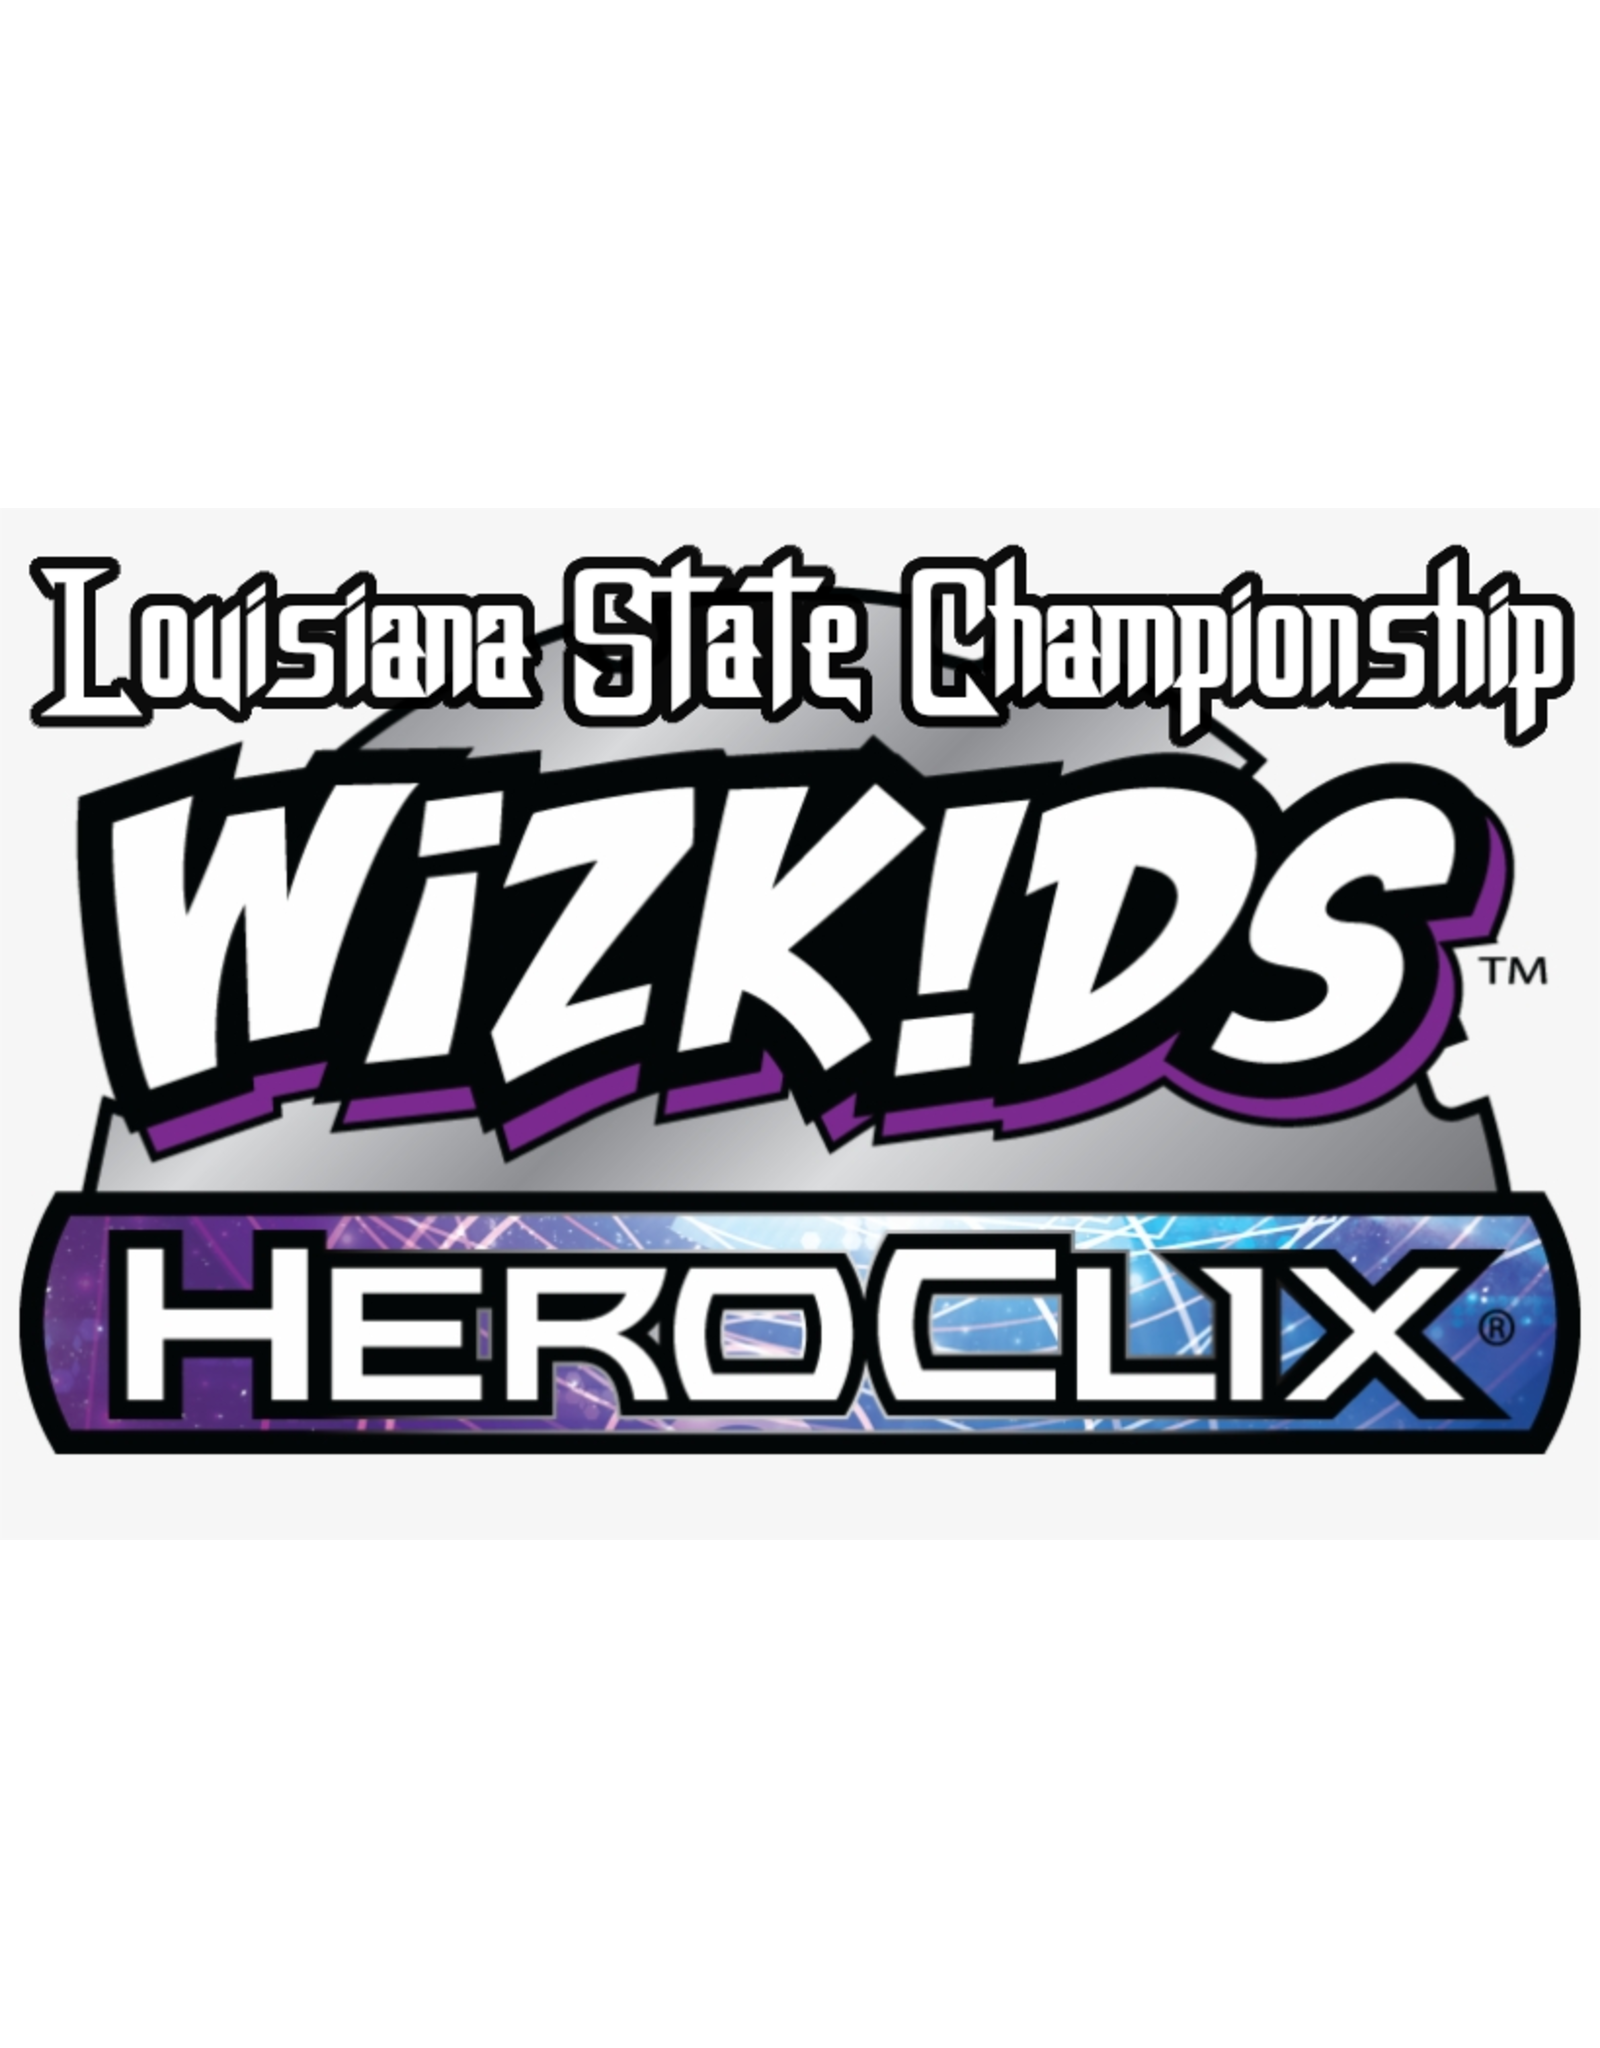 HEROCLIX - Louisiana State Championship 11AM 1/21/23